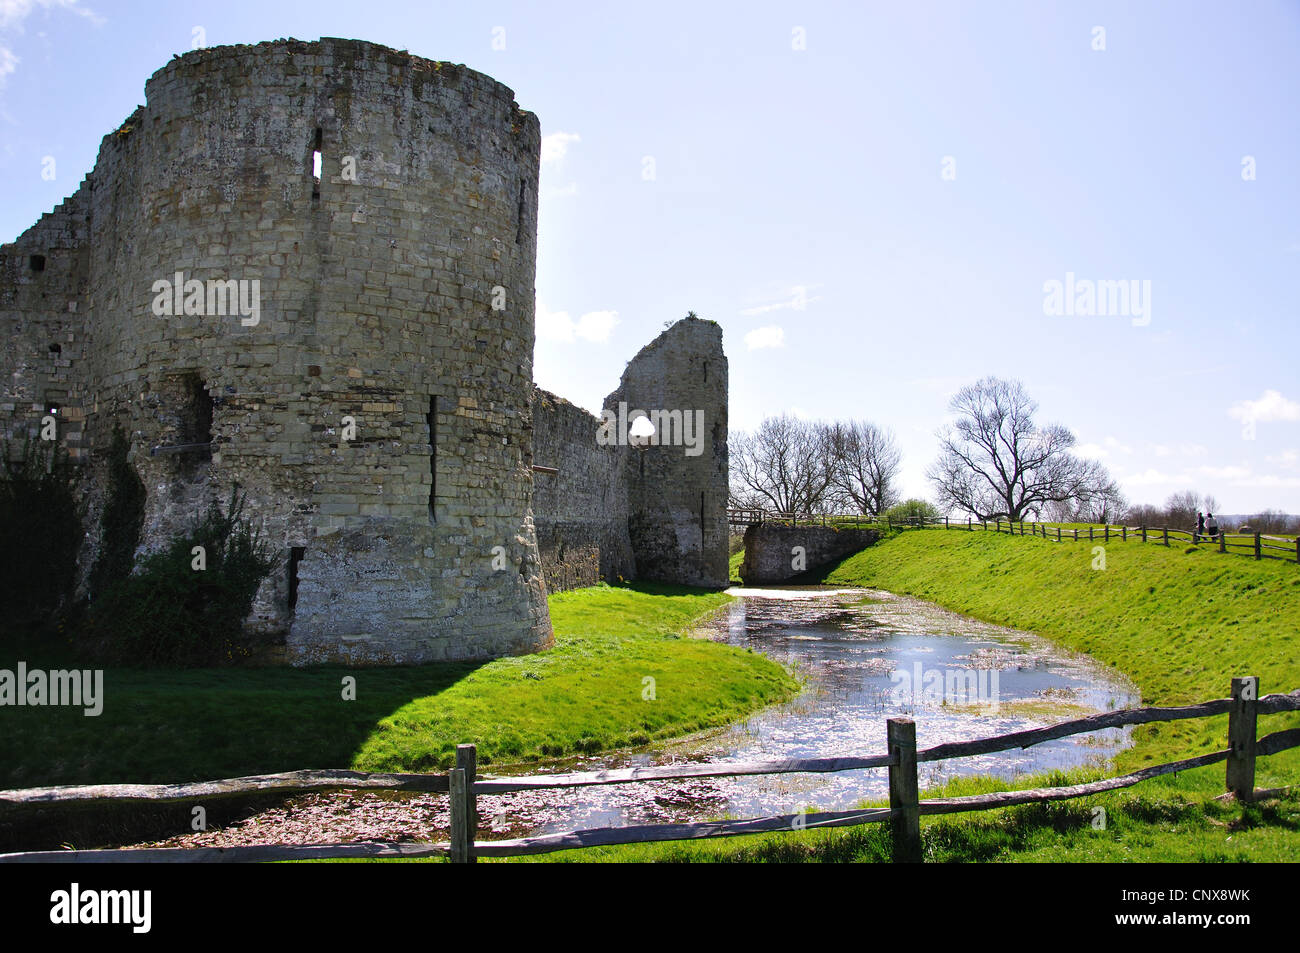 Le château de Pevensey, Pevensey, East Sussex, Angleterre, Royaume-Uni Banque D'Images